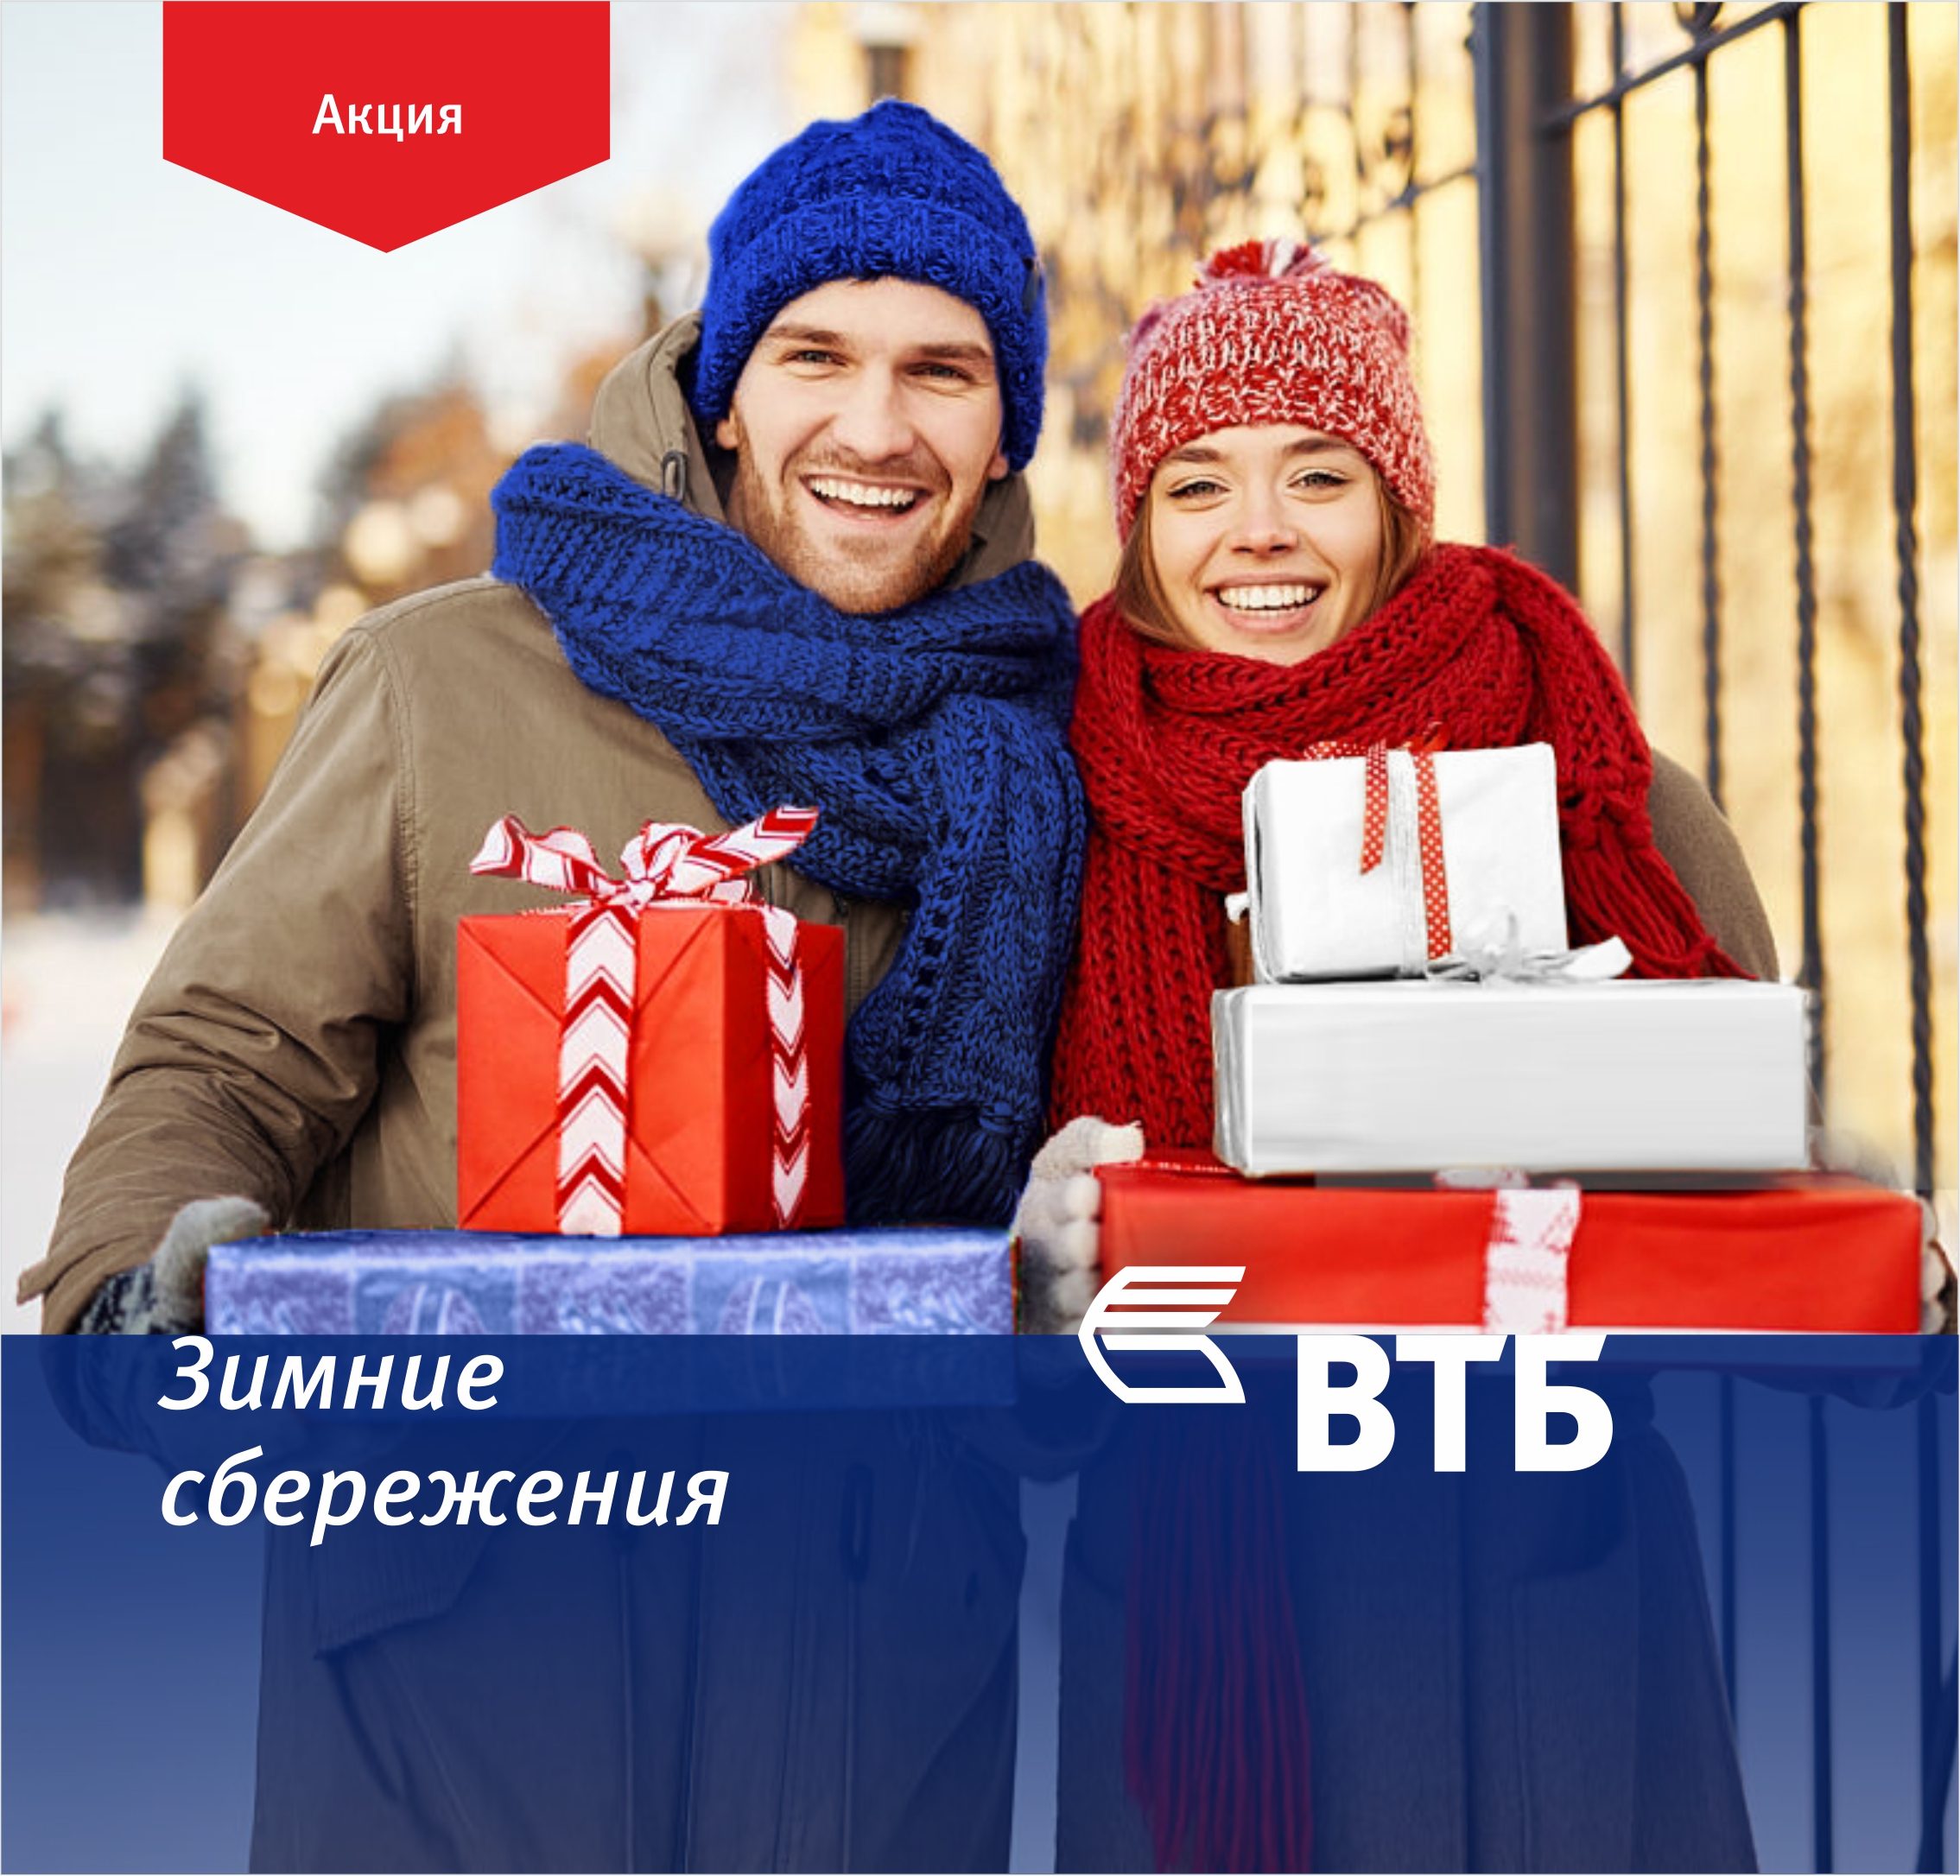 Банк ВТБ (Армения) запустил акцию "Зимние сбережения" по вкладам с высокими ставками